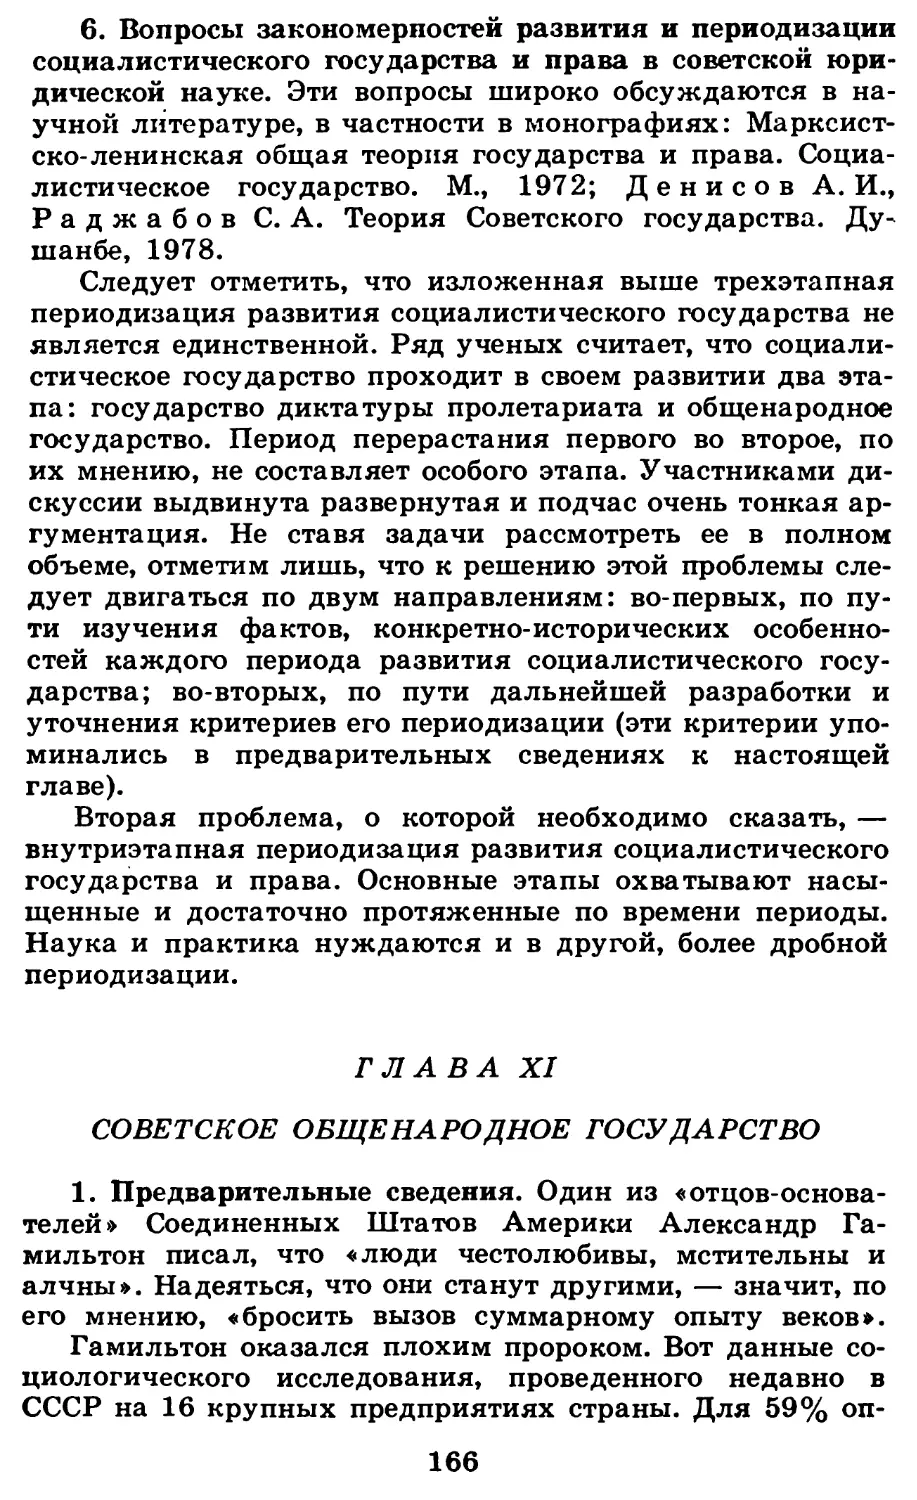 Глава XI. Советское общенародное государство